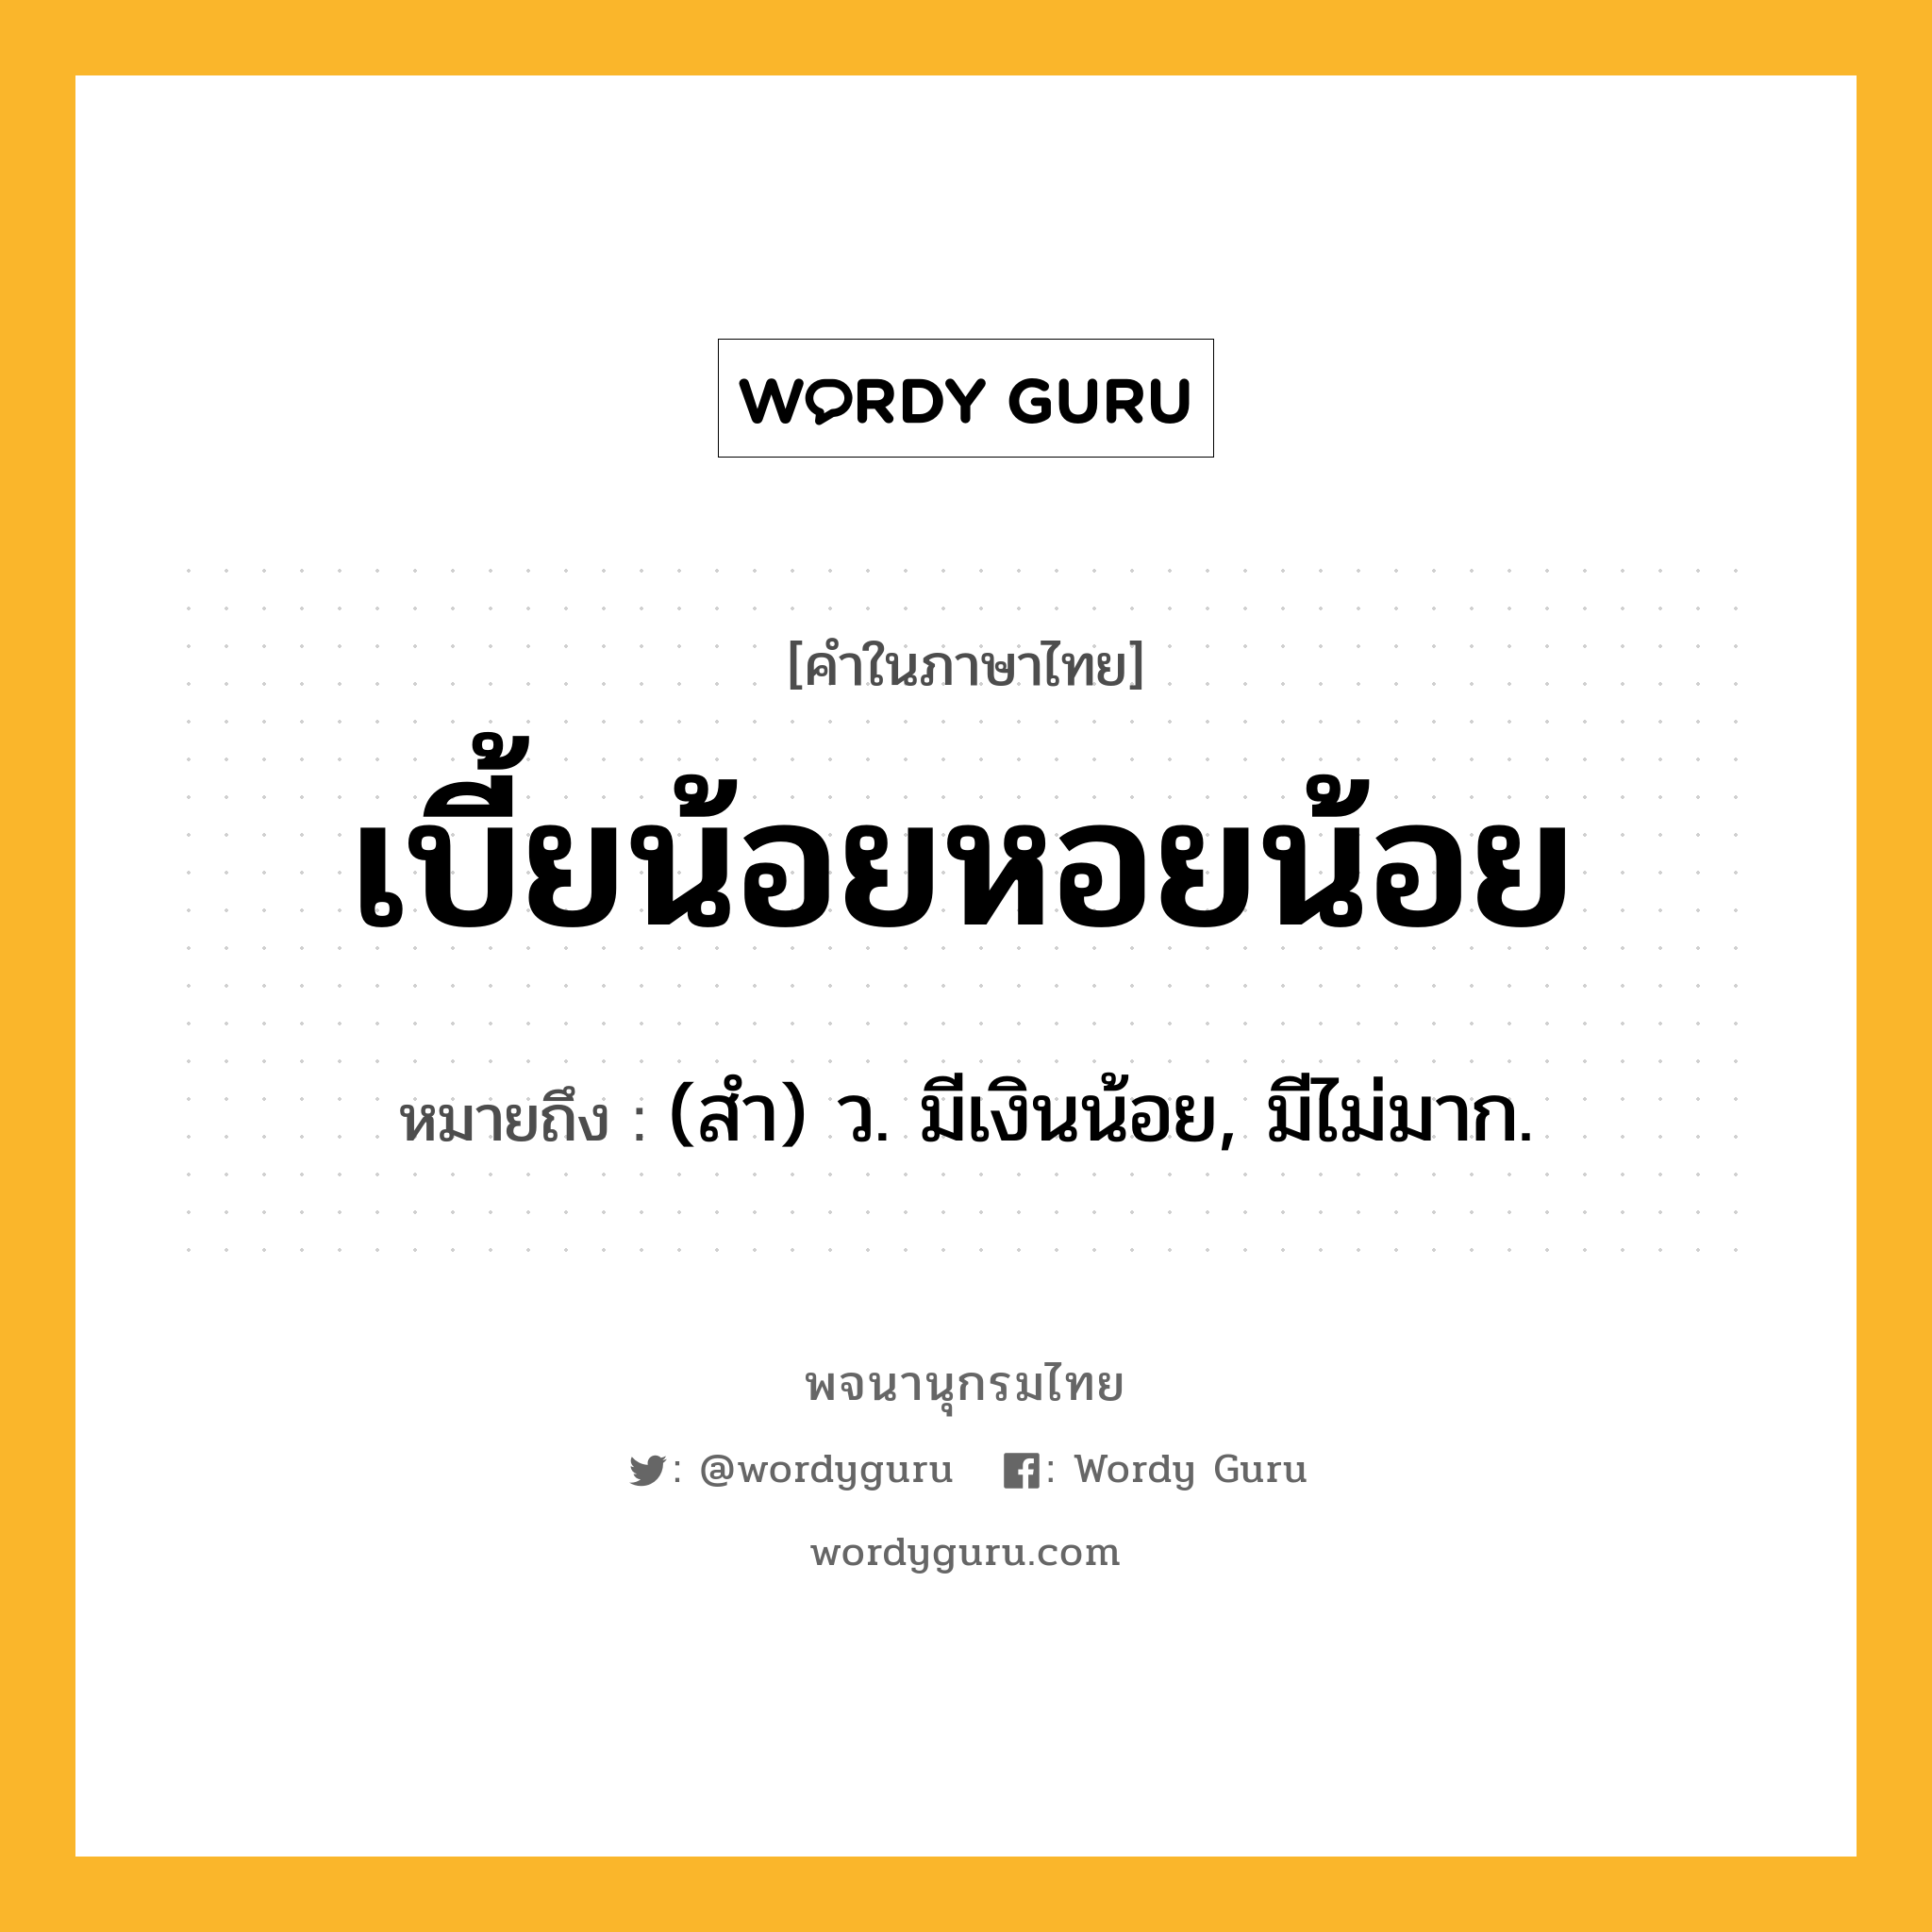 เบี้ยน้อยหอยน้อย ความหมาย หมายถึงอะไร?, คำในภาษาไทย เบี้ยน้อยหอยน้อย หมายถึง (สํา) ว. มีเงินน้อย, มีไม่มาก.